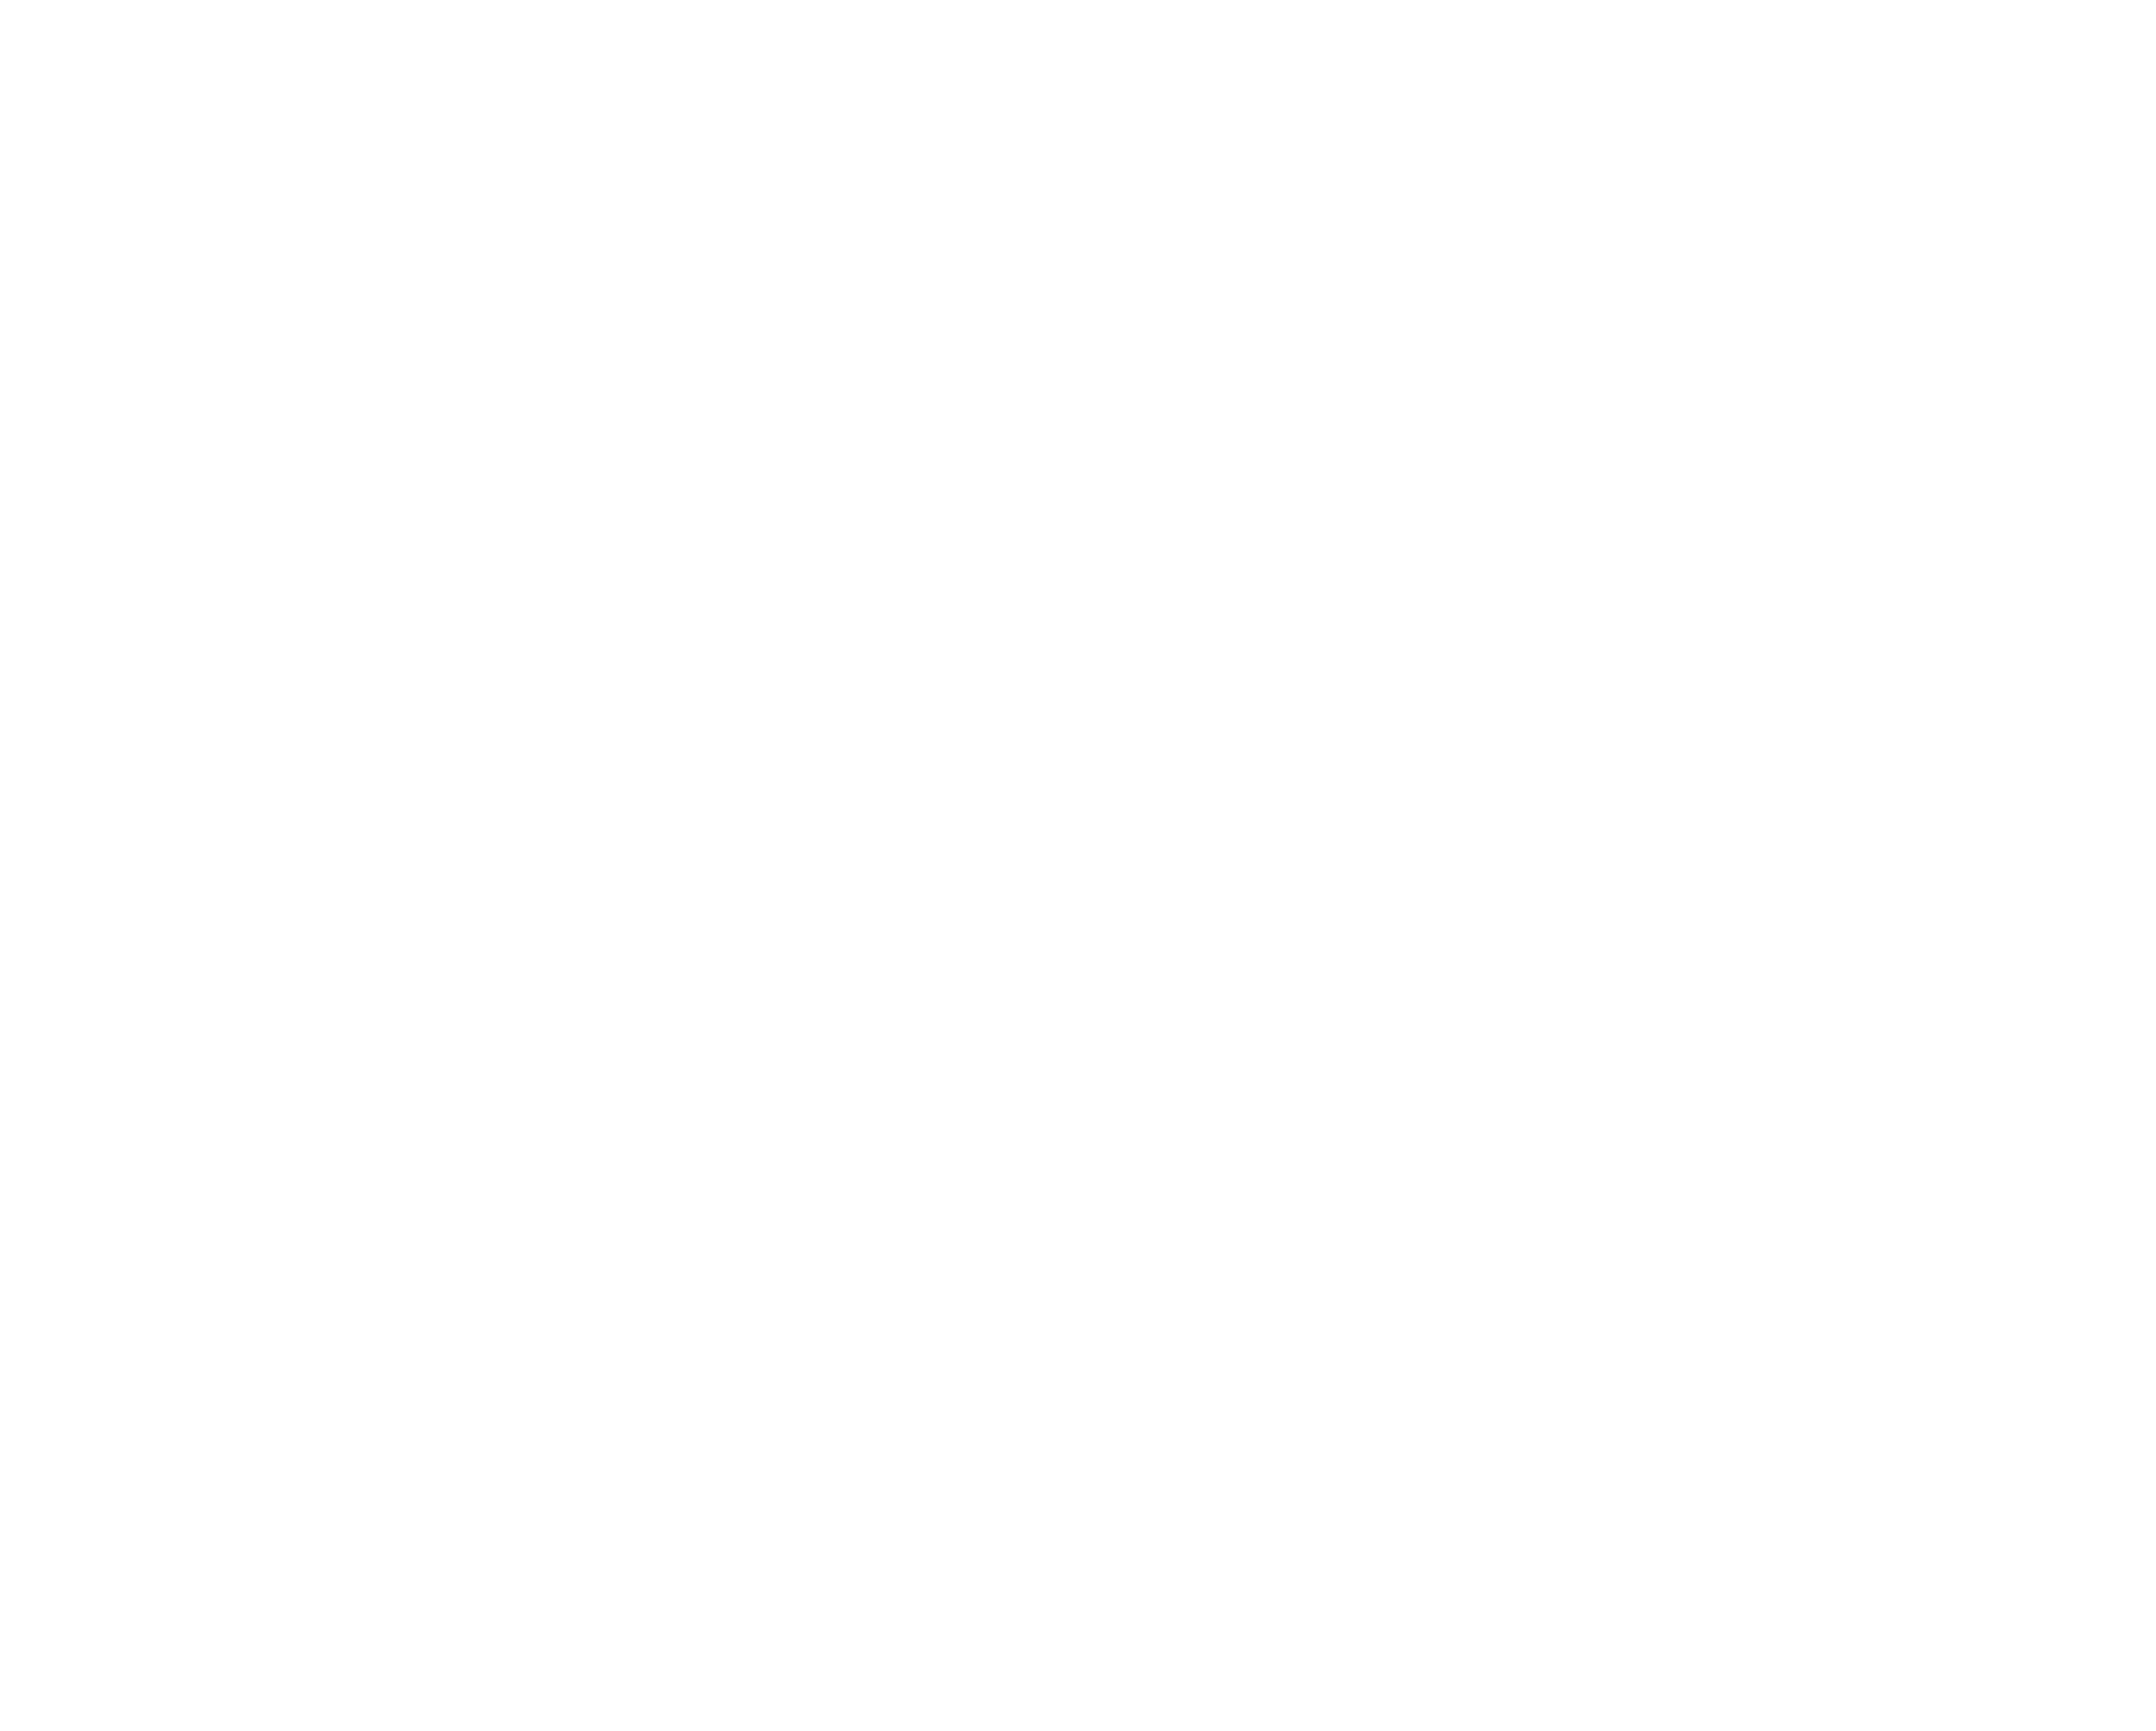 Rádio Clube FM Digital